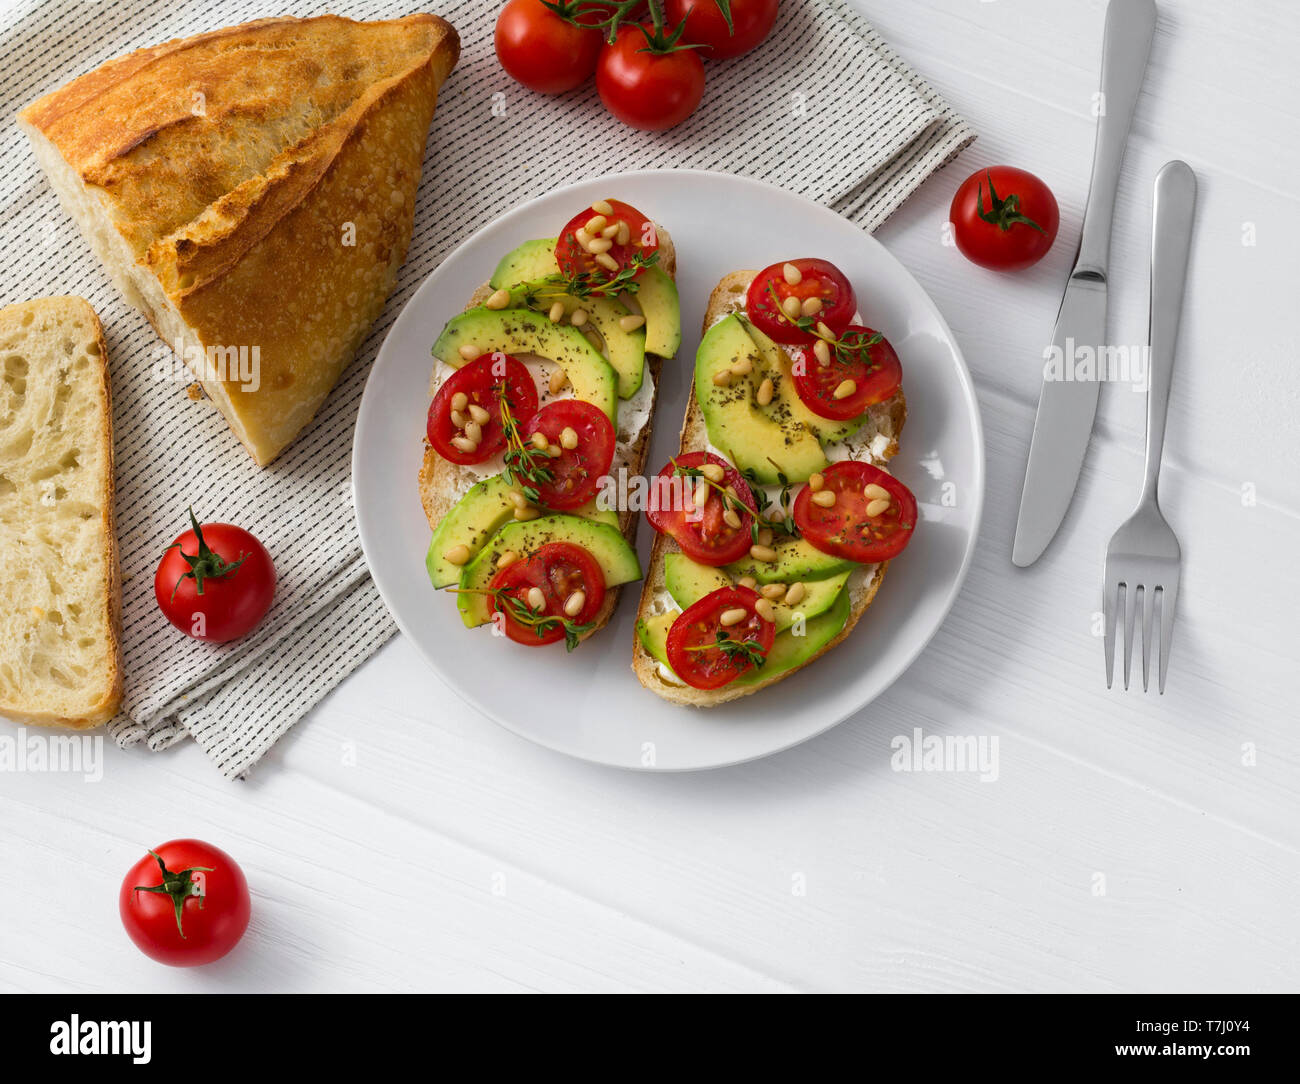 Deux sandwiches ou des tapas préparées avec des légumes différents,comme avocat, tomate et thym frais noix de pin étincelaient. Des aliments sains à la w blanc Banque D'Images